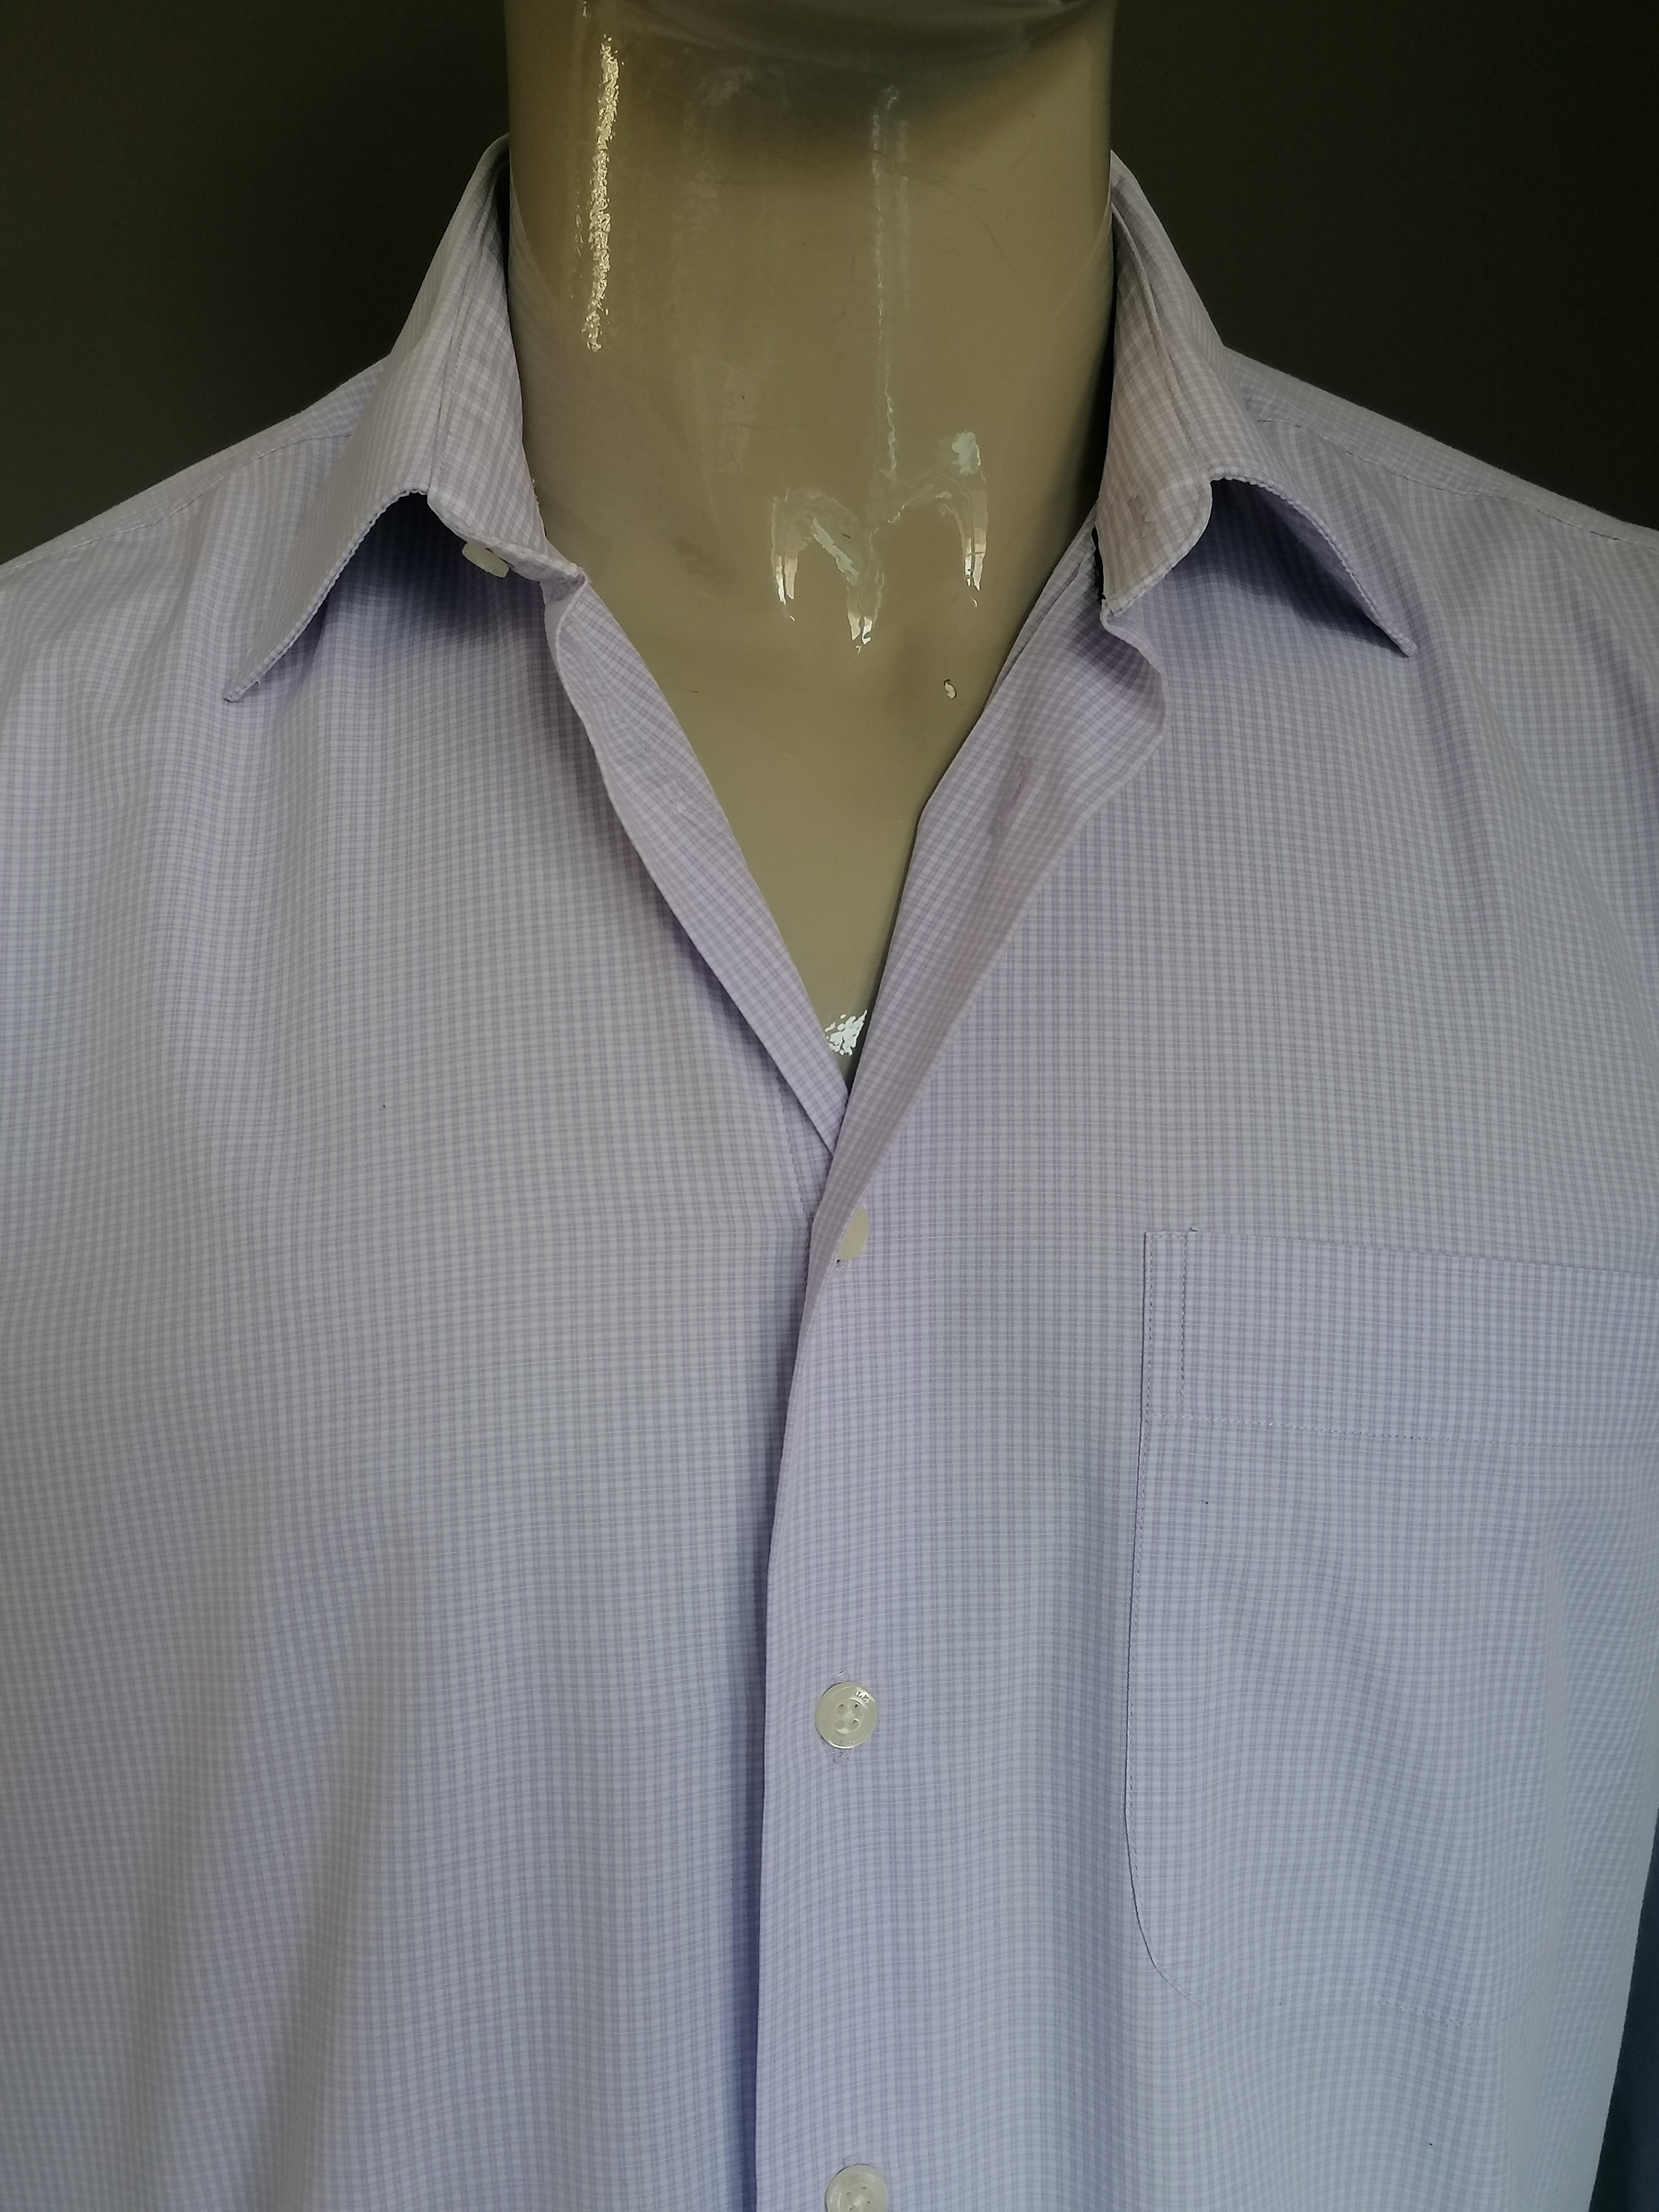 Camisa de Stanley Morgan. Púrpura blanca a cuadros. Tamaño 42 / L. |